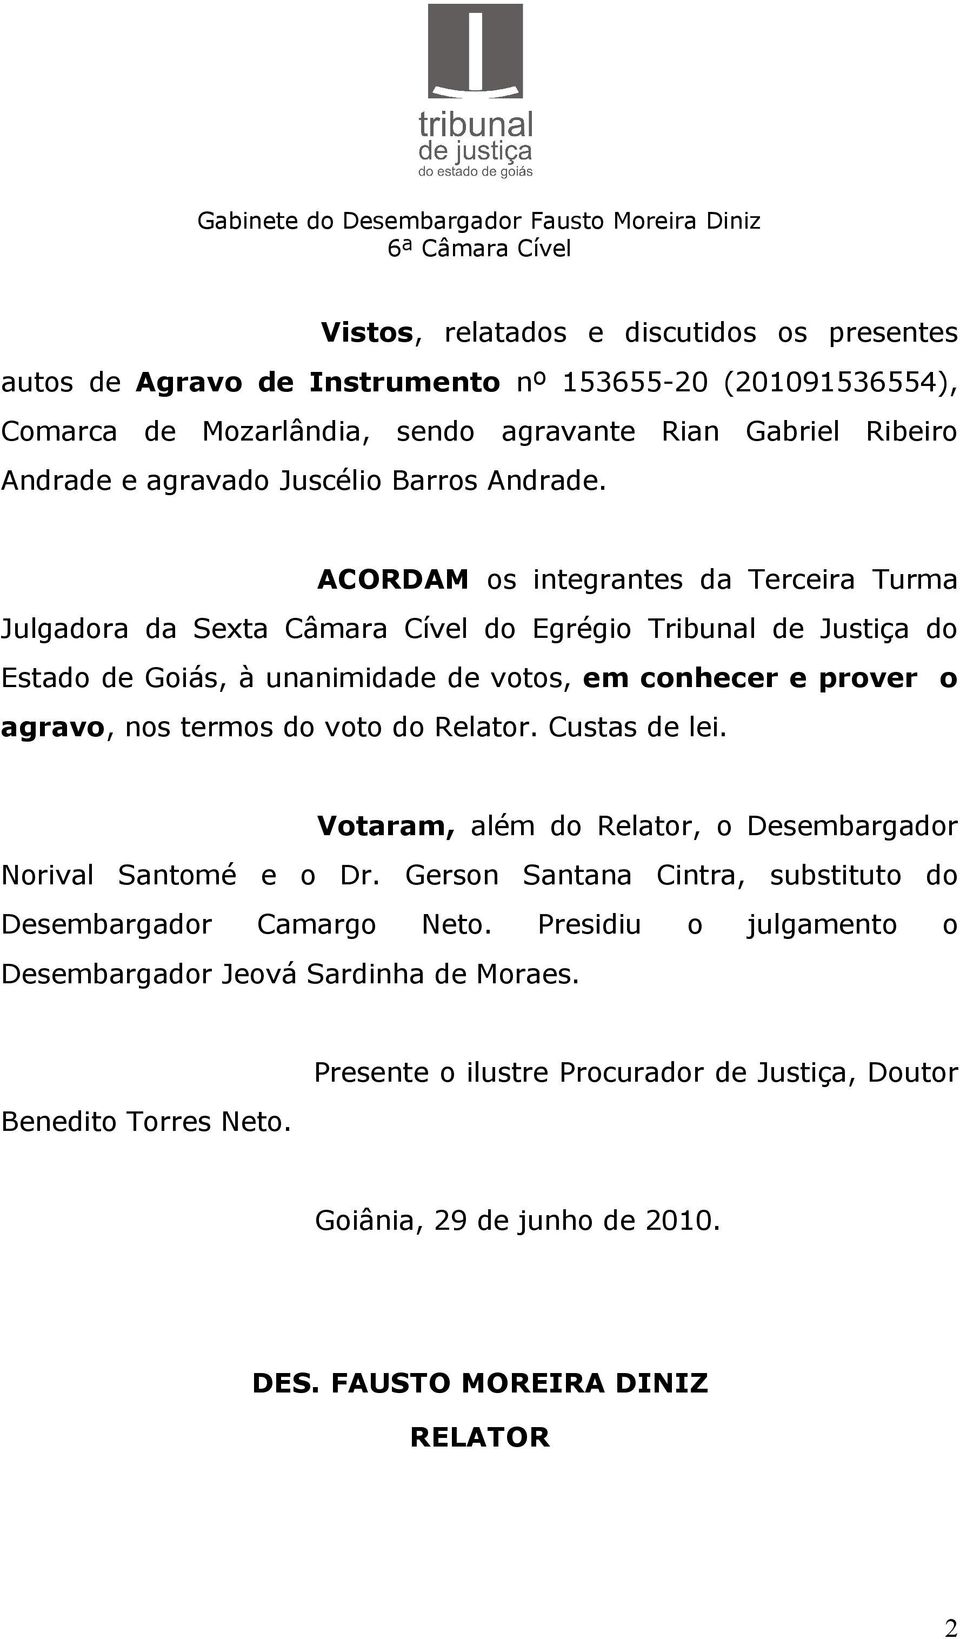 ACORDAM os integrantes da Terceira Turma Julgadora da Sexta Câmara Cível do Egrégio Tribunal de Justiça do Estado de Goiás, à unanimidade de votos, em conhecer e prover o agravo, nos termos